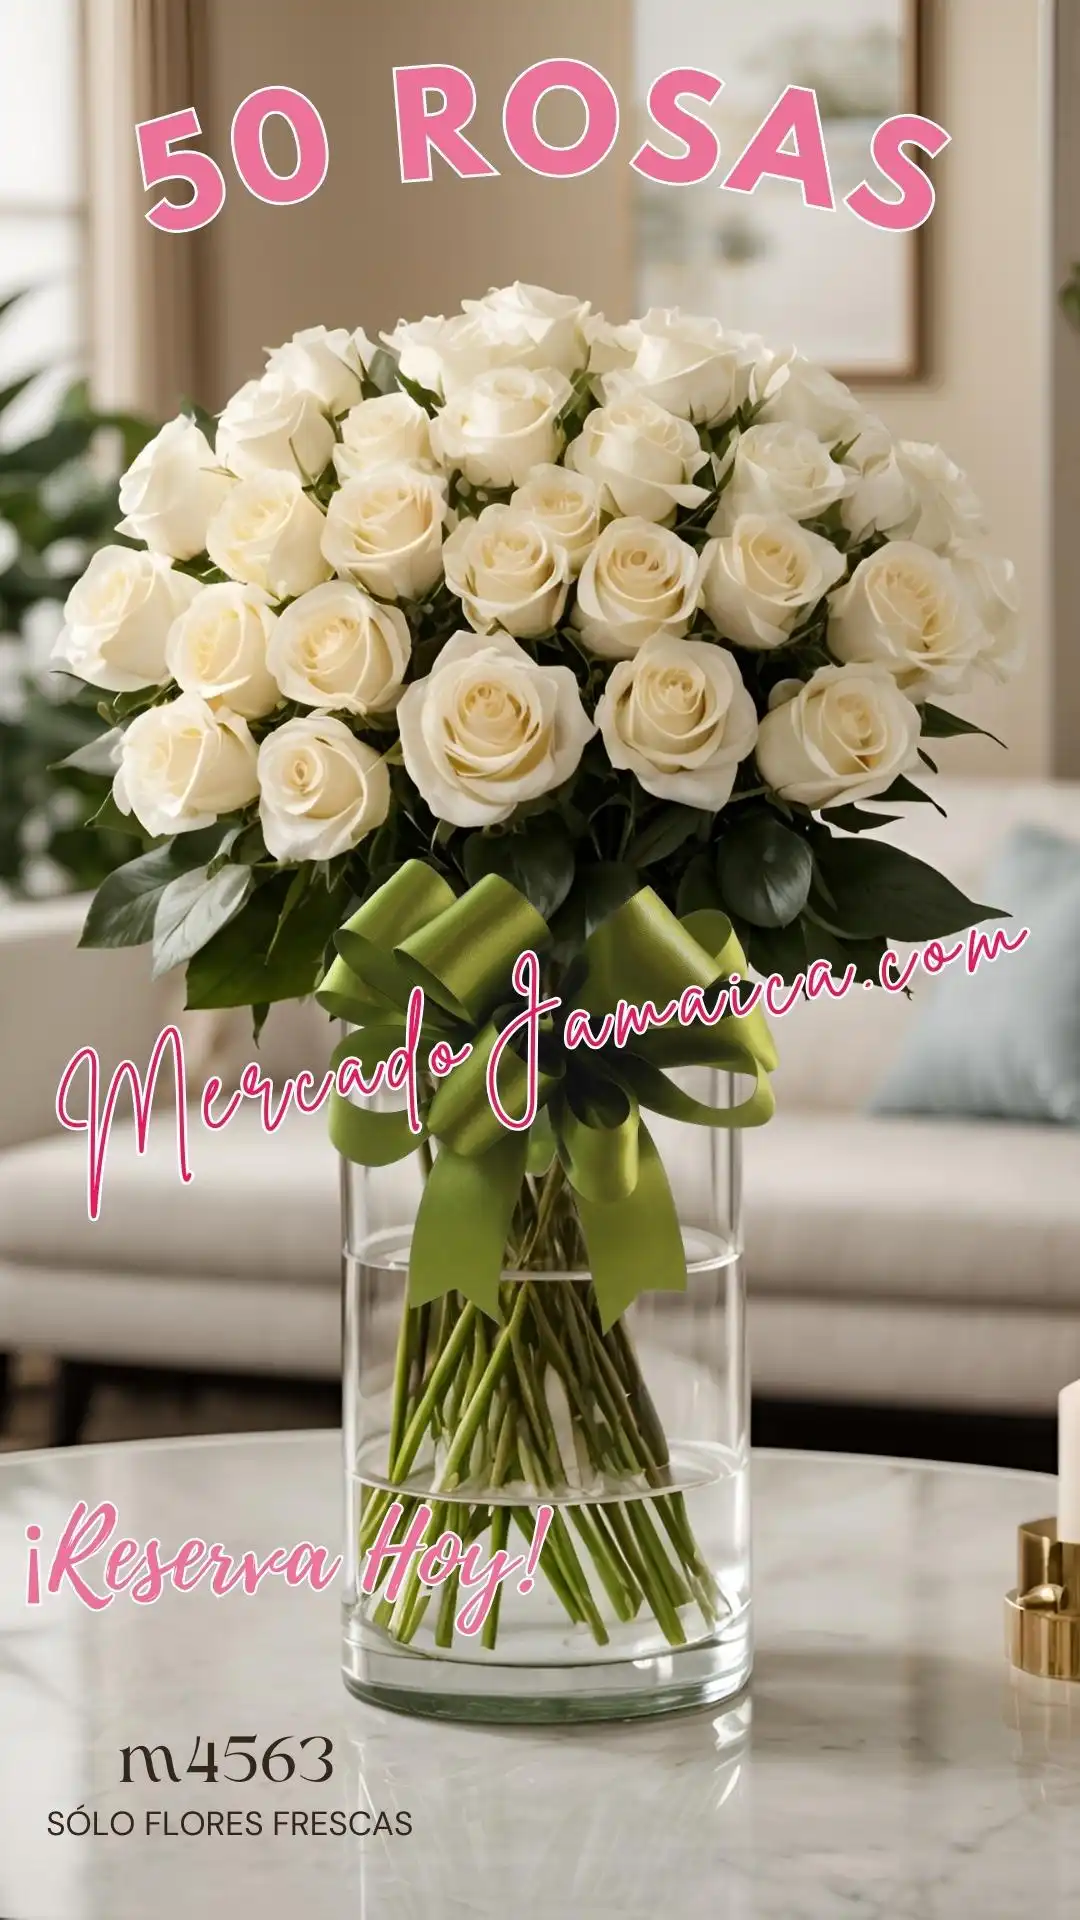 Elegante susurro con 50 rosas blancas